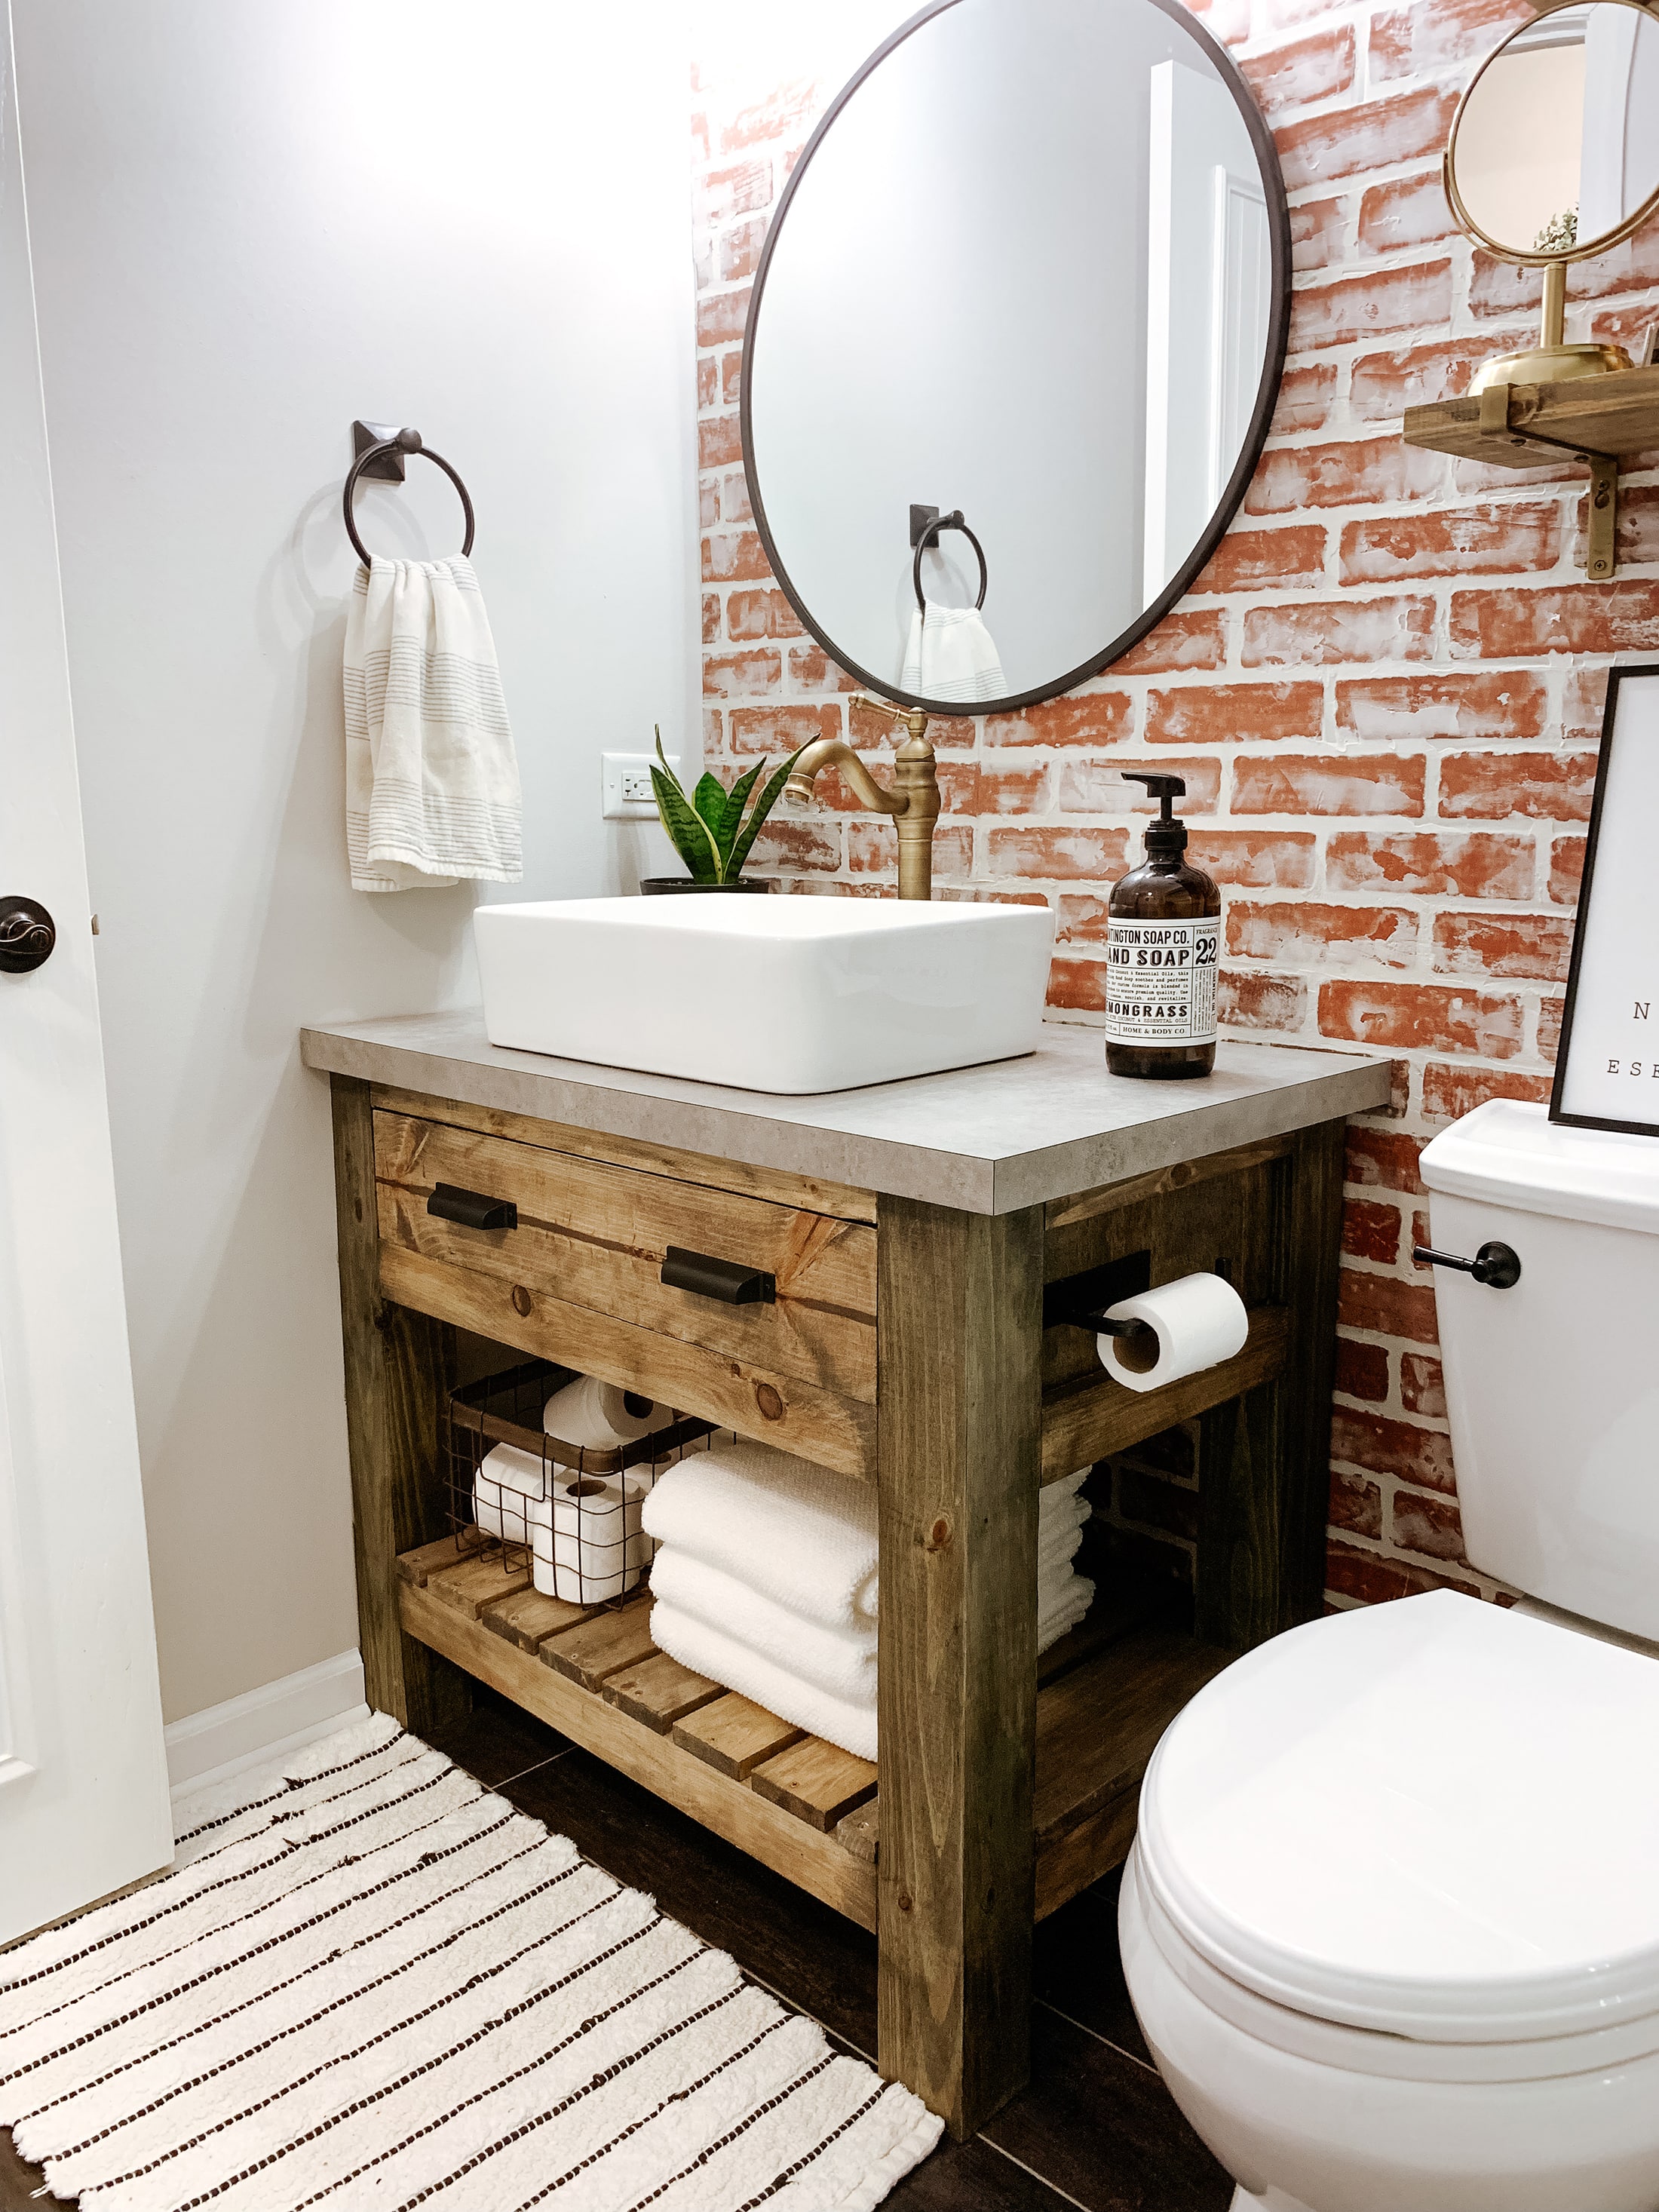 Diy Rustic Bathroom Vanity Sammy On State - Diy Rustic Bathroom Vanity Ideas